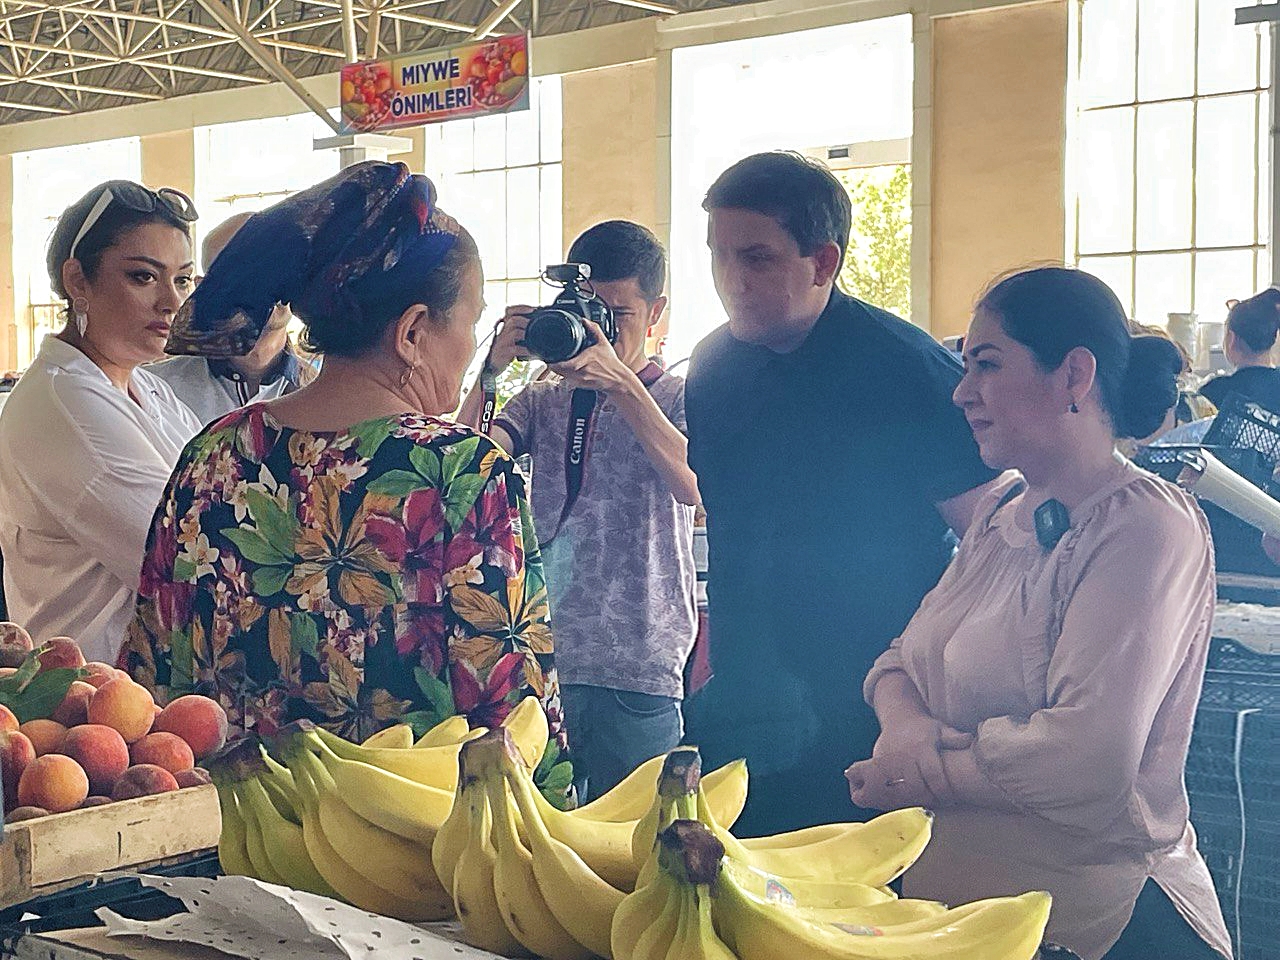 Члены комиссии посетили центральный фермерский рынок в городе Нукус, который стал основным местом Каракалпакских событий, с целью изучения настроения людей